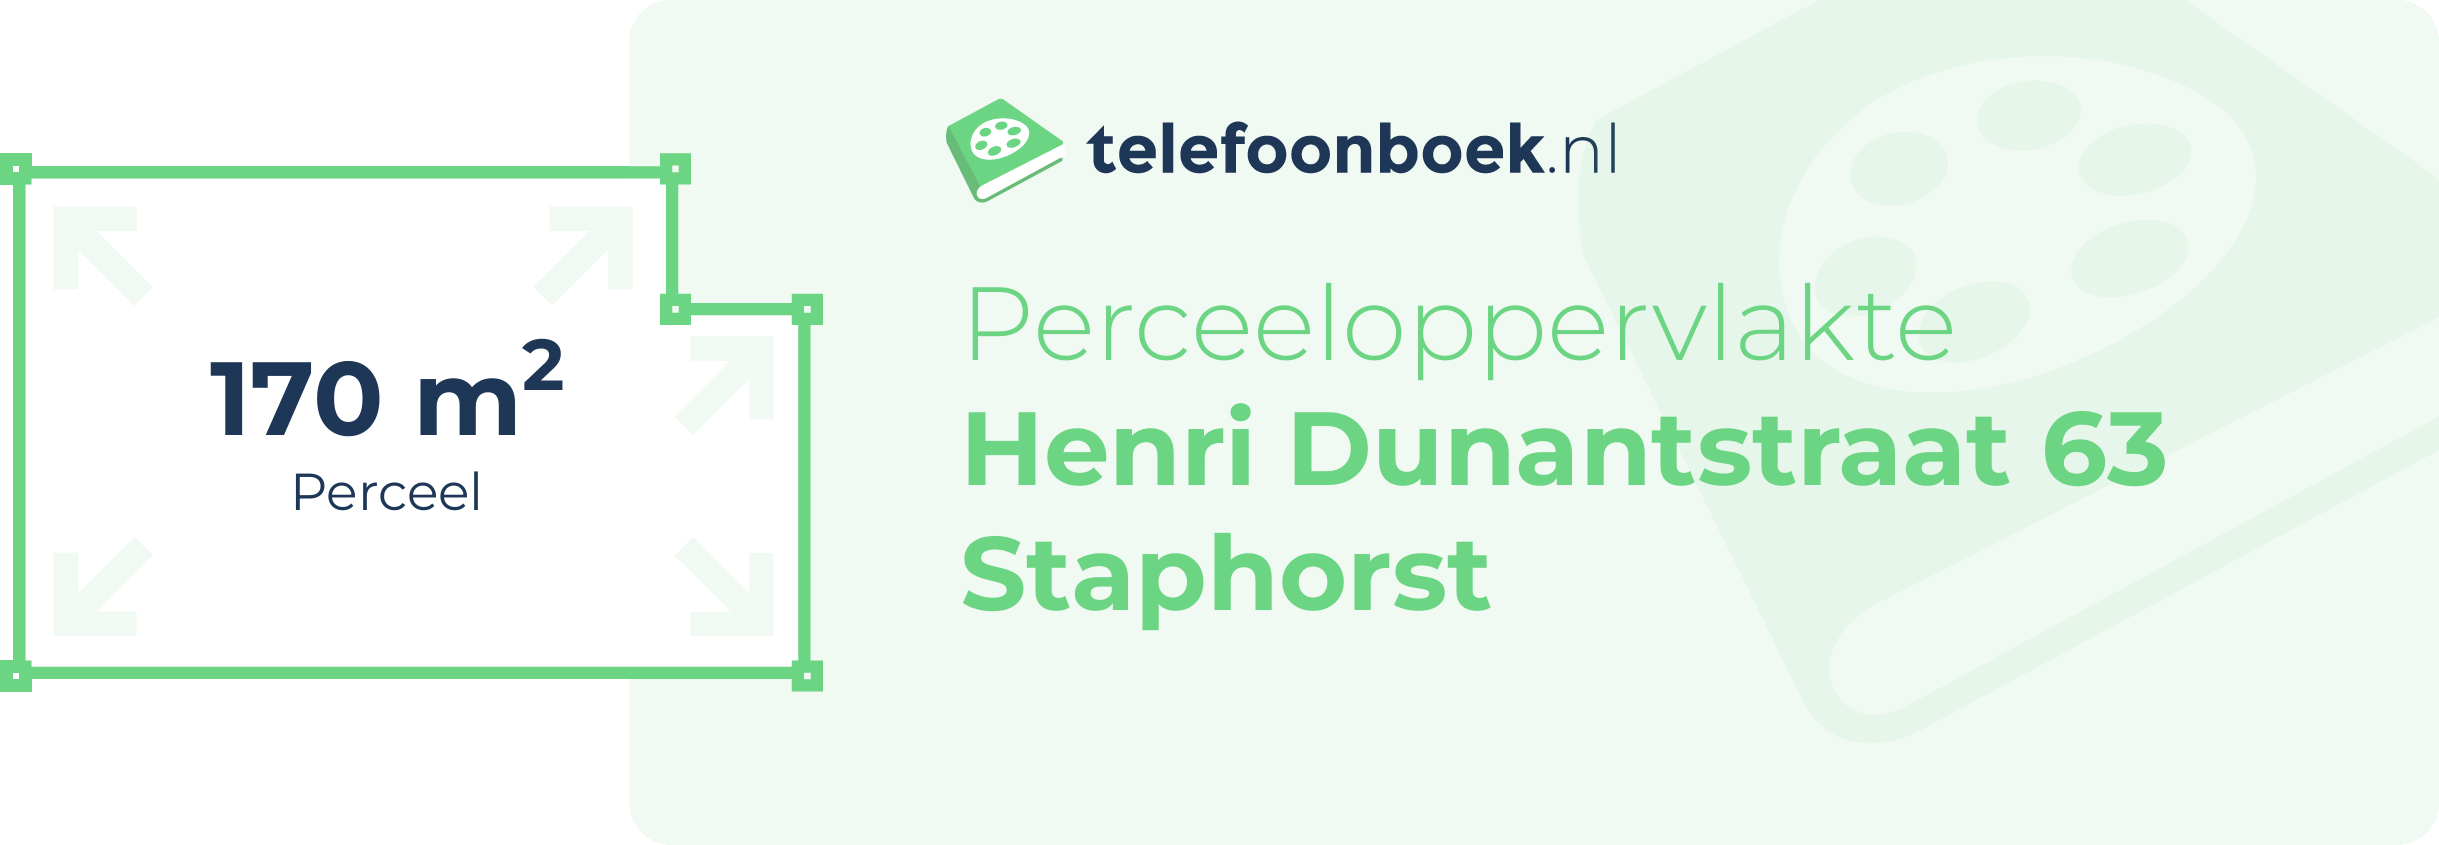 Perceeloppervlakte Henri Dunantstraat 63 Staphorst